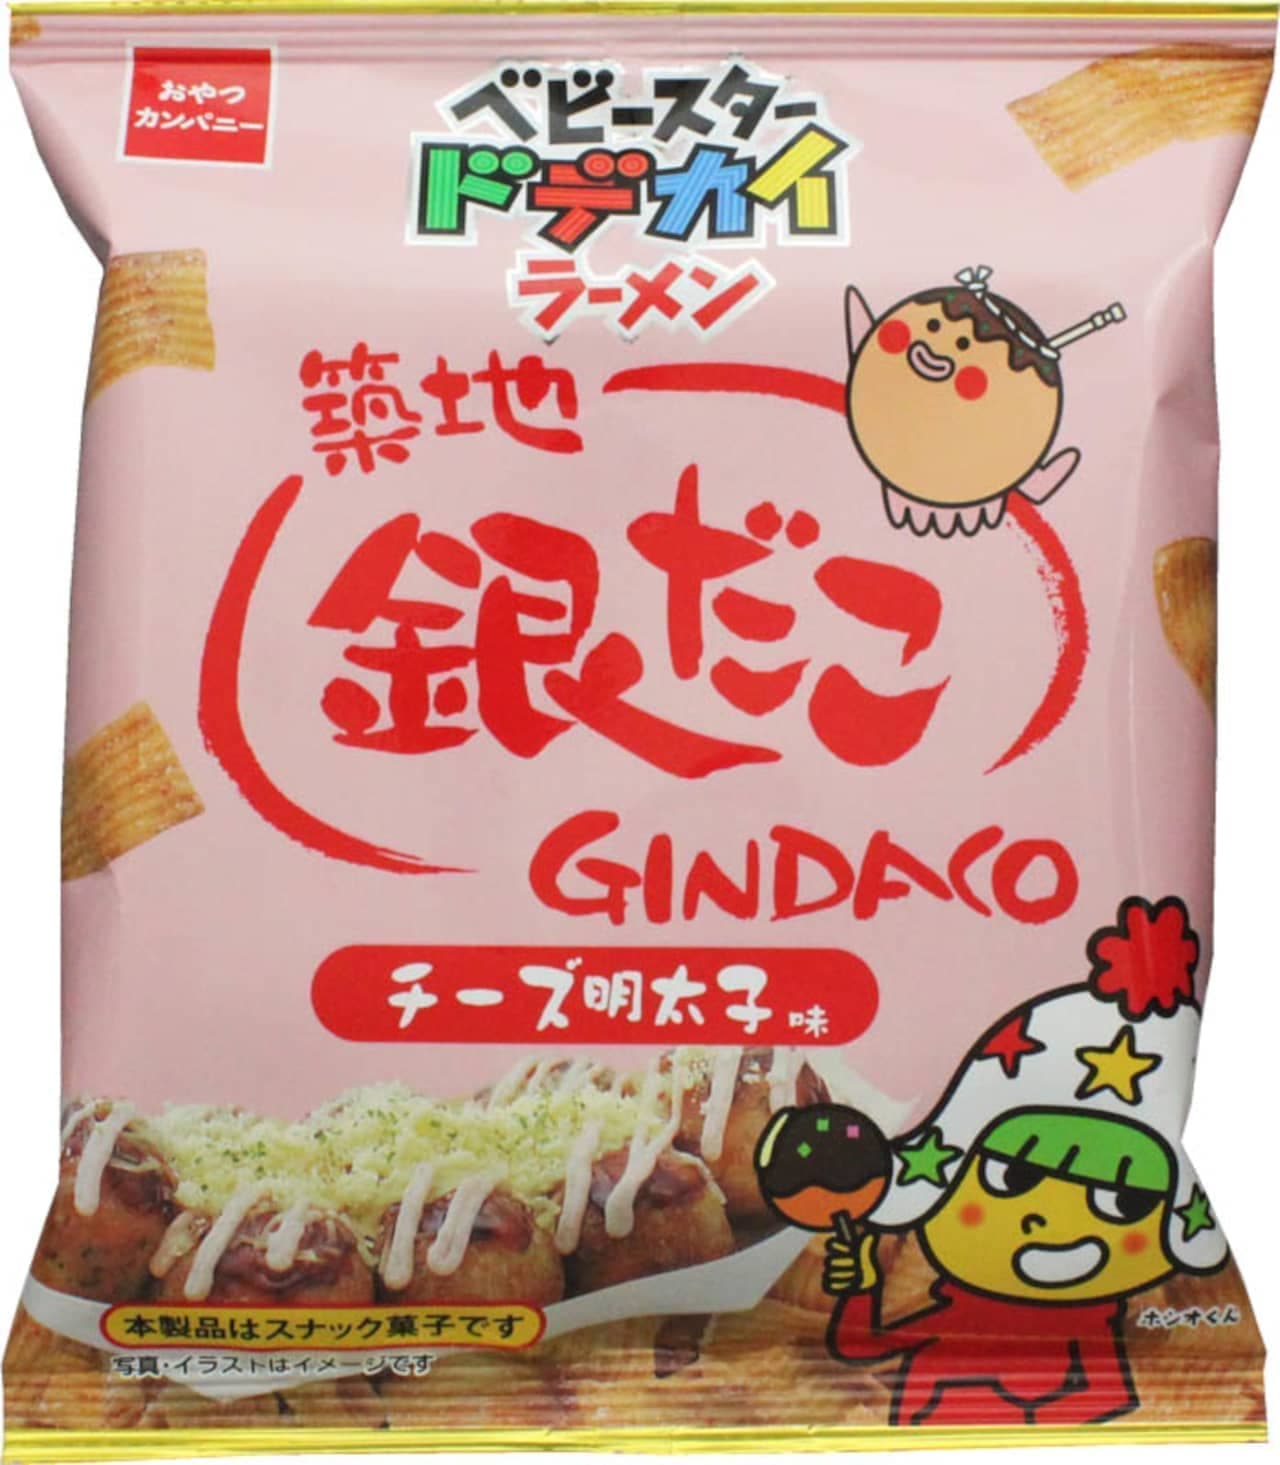 Oyazuka Company "Baby Star Dodekai Ramen (Tsukiji Gindako Cheese Mentaiko Flavor)